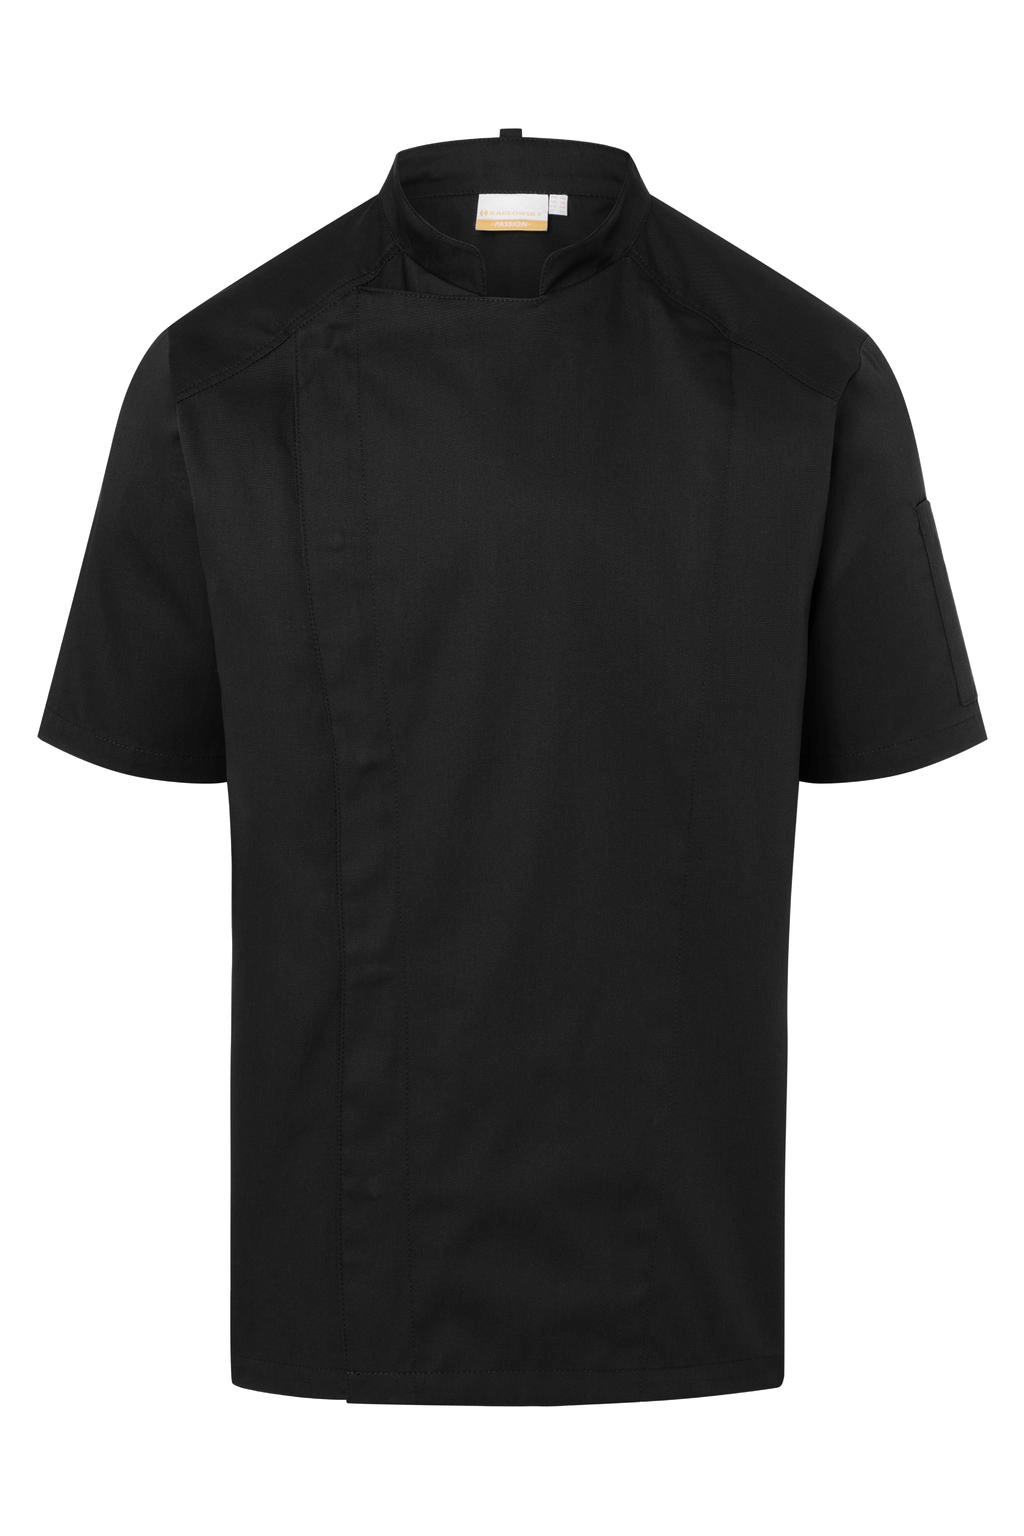 Short-Sleeve Chef Jacket Modern-Look zum Besticken und Bedrucken in der Farbe Black mit Ihren Logo, Schriftzug oder Motiv.